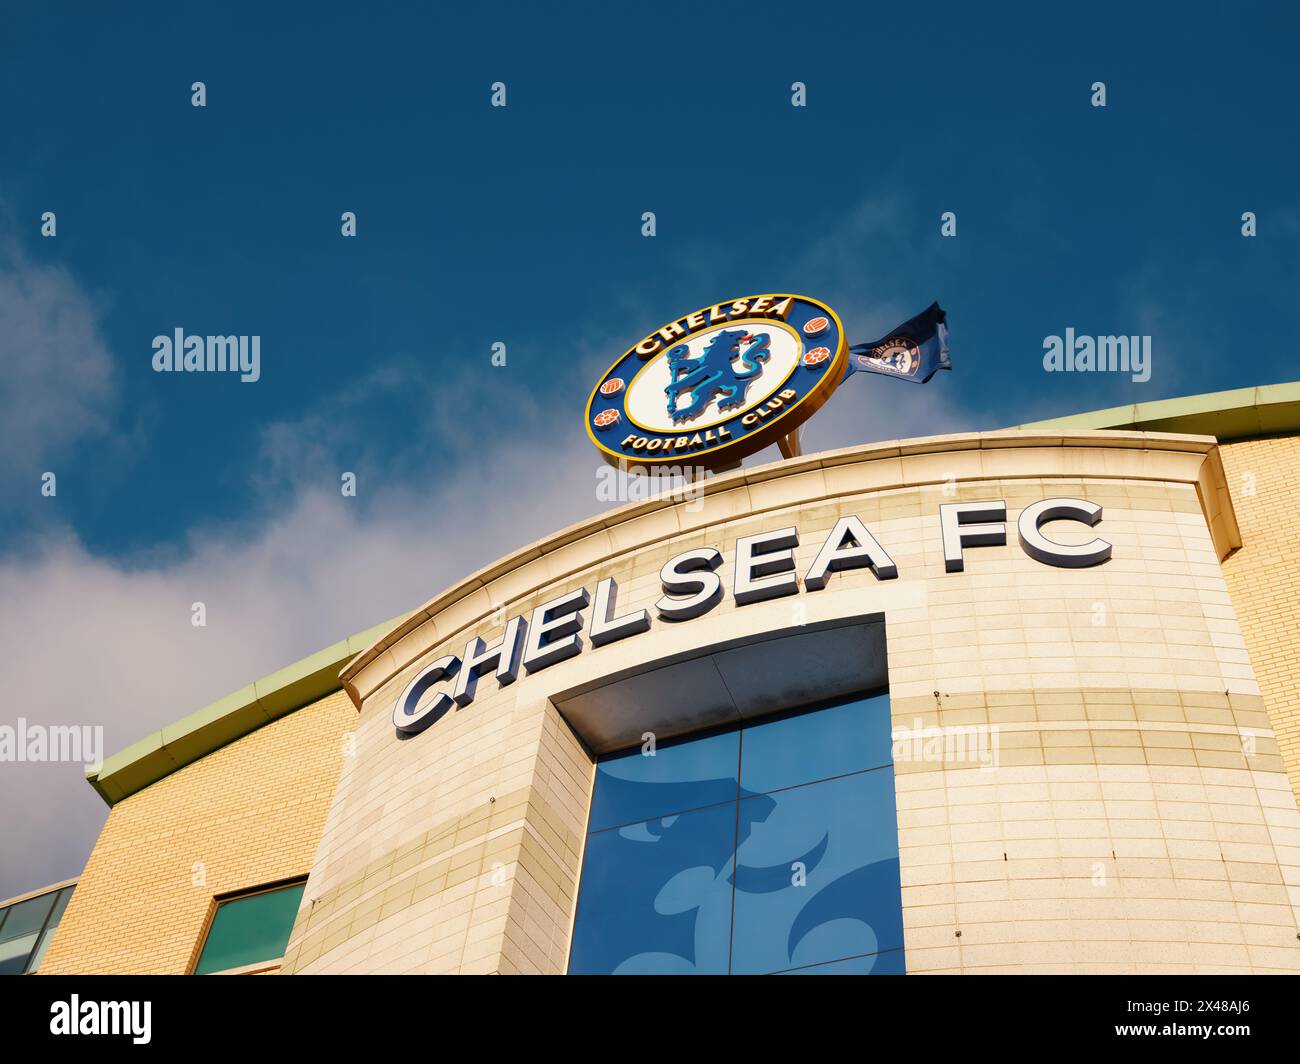 Stamford Bridge, Stadion des Chelsea Football Club und Abzeichen, die Sie zum Weststand in Chelsea, London, England, Großbritannien, bringen Stockfoto